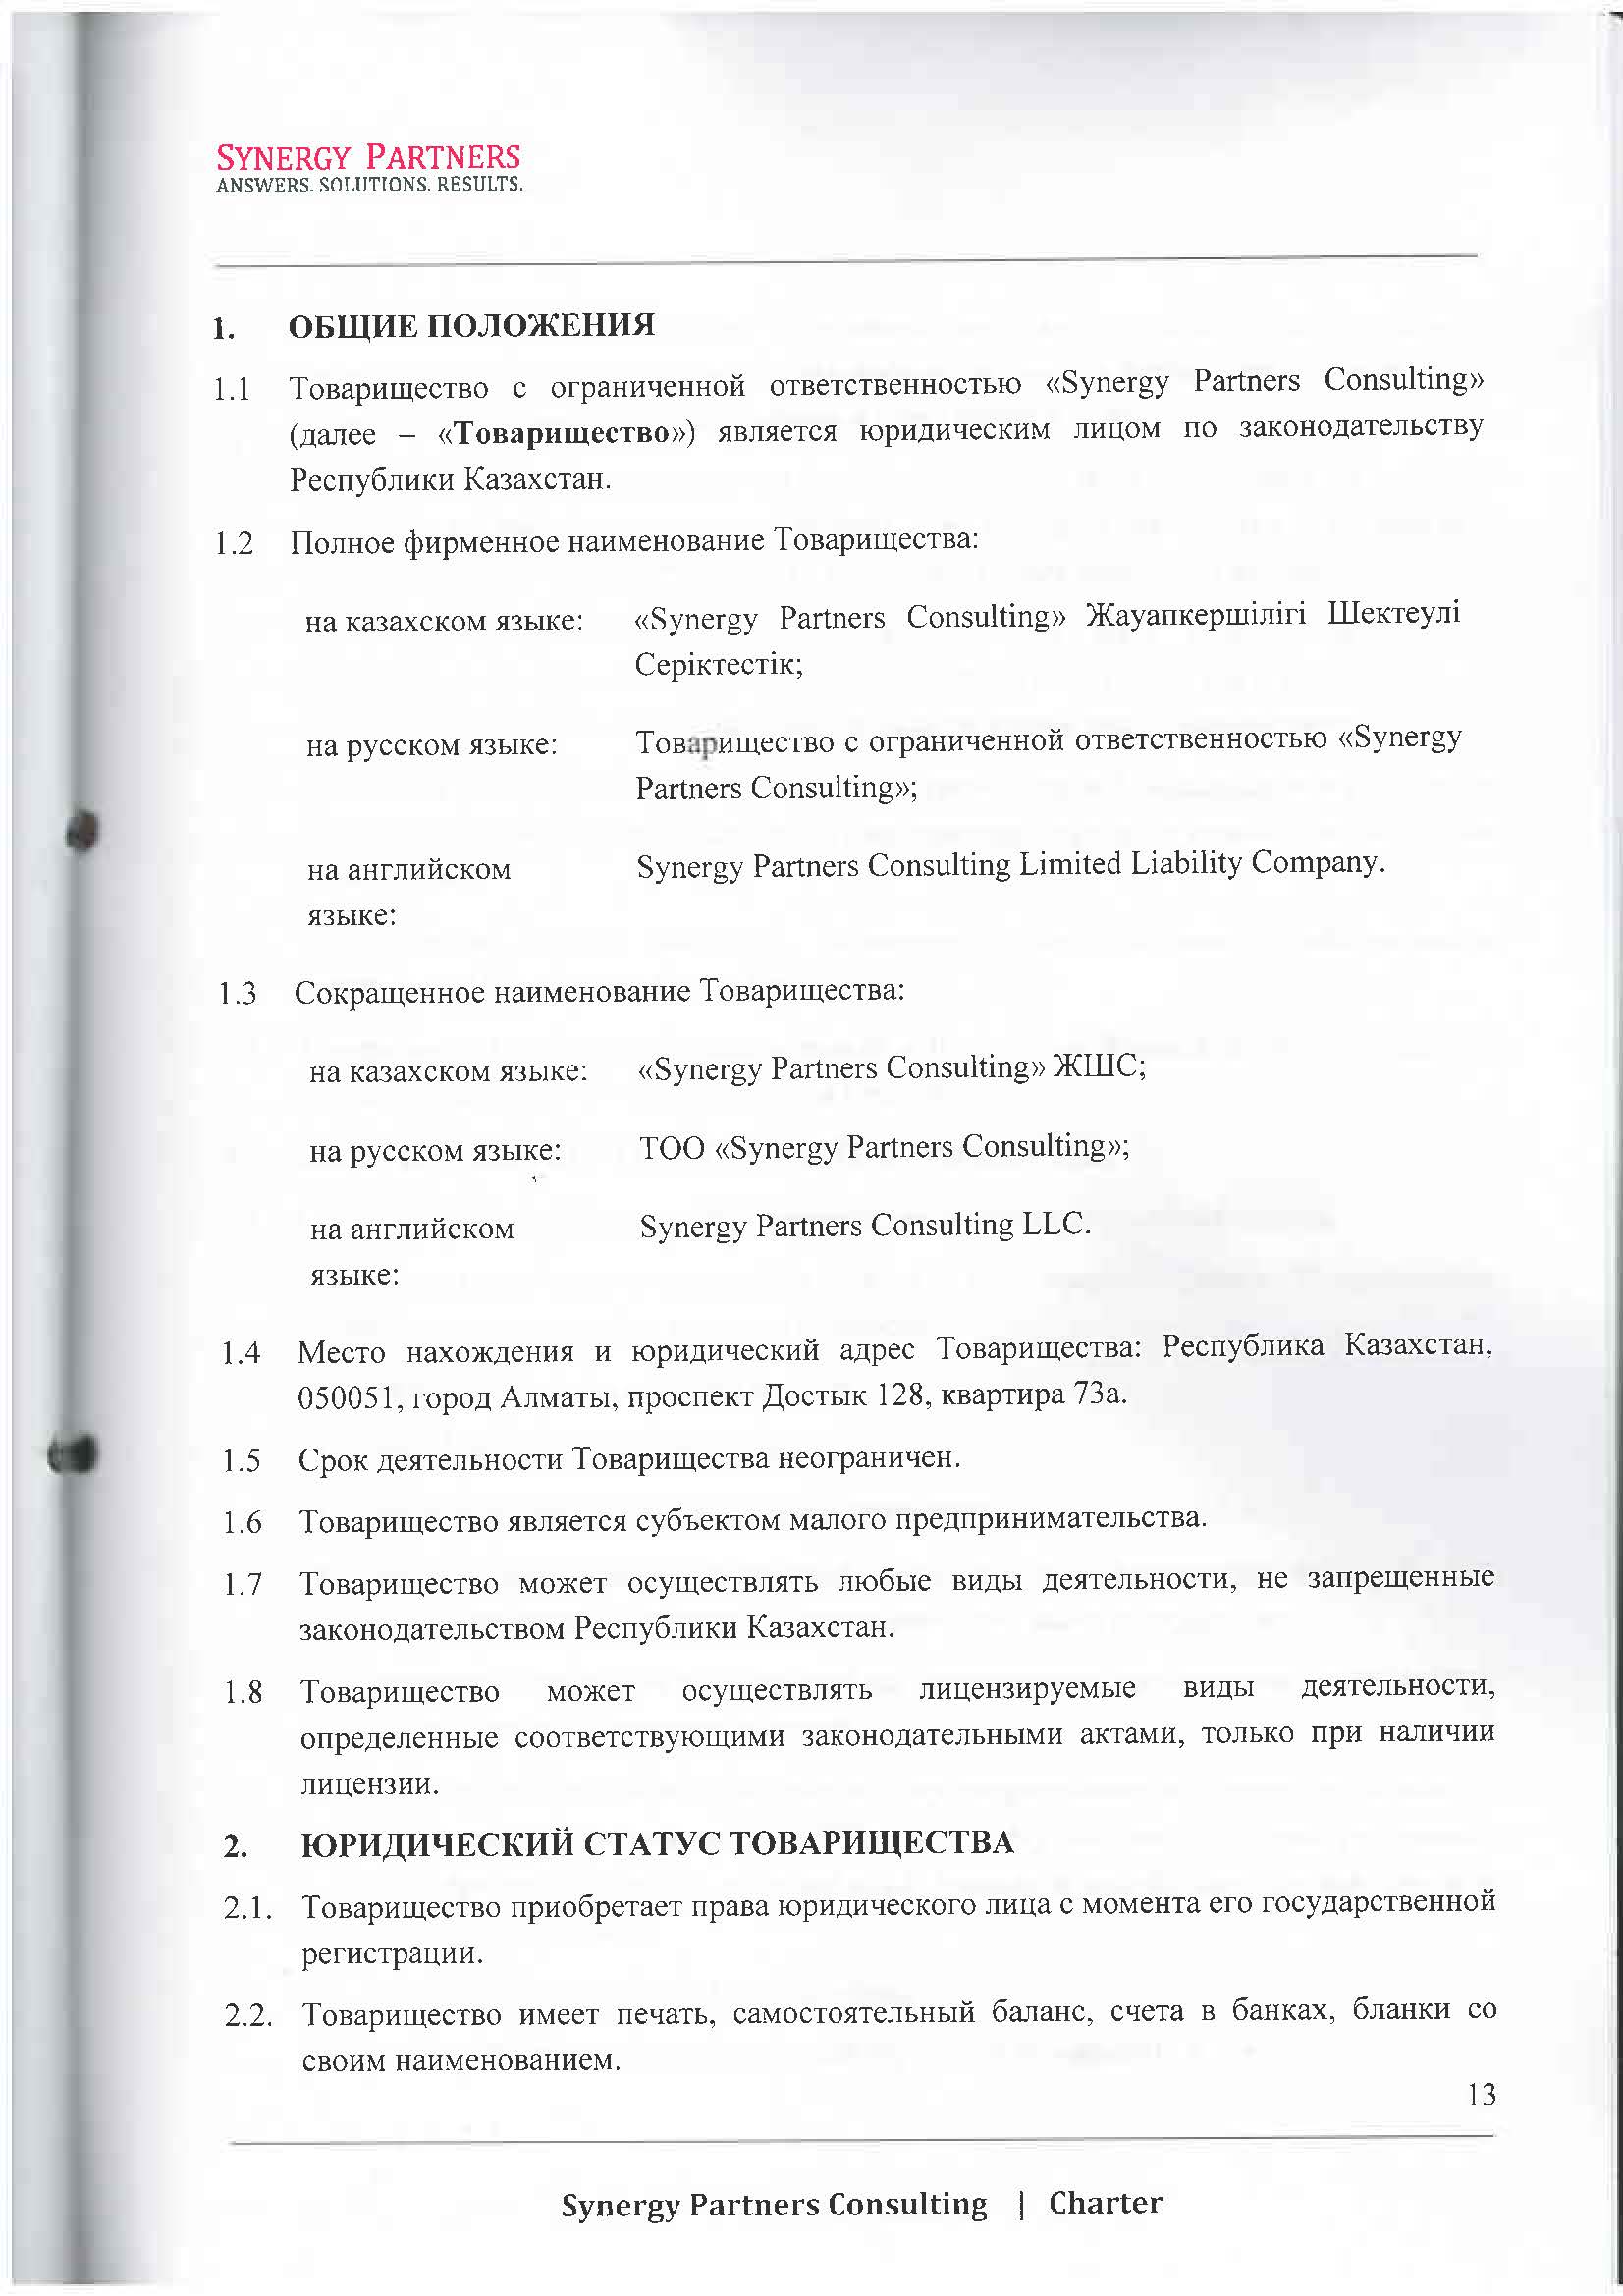 Наши реквизиты, сведения о нас - 12 | documentter.kz в Казахстане